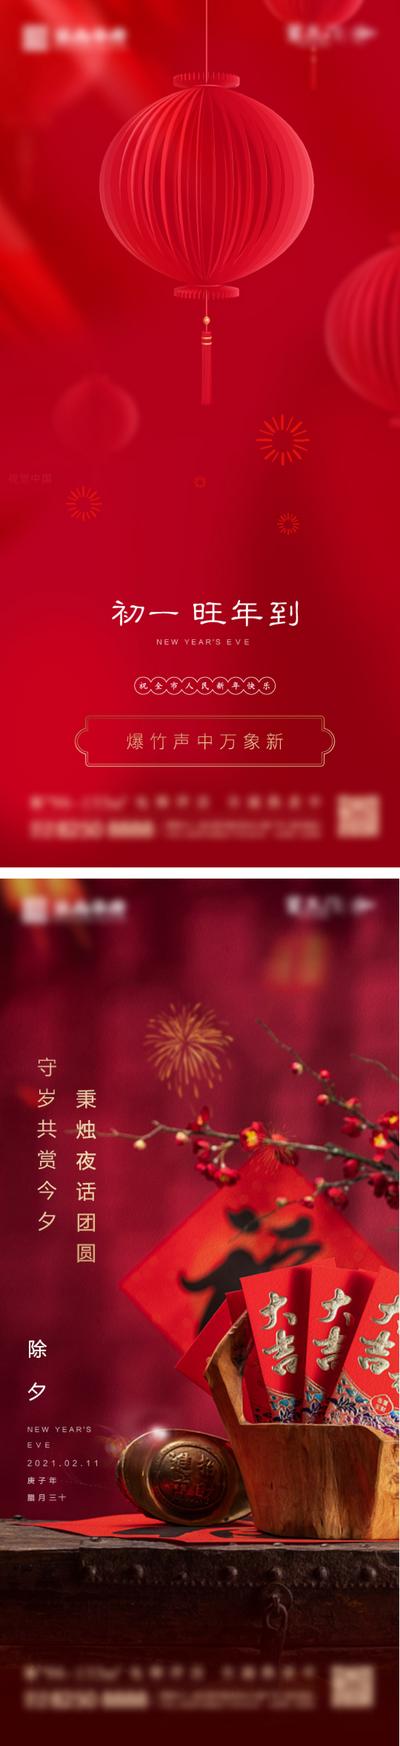 南门网 海报 中国传统节日 房地产 除夕 初一 民俗 灯笼 红包